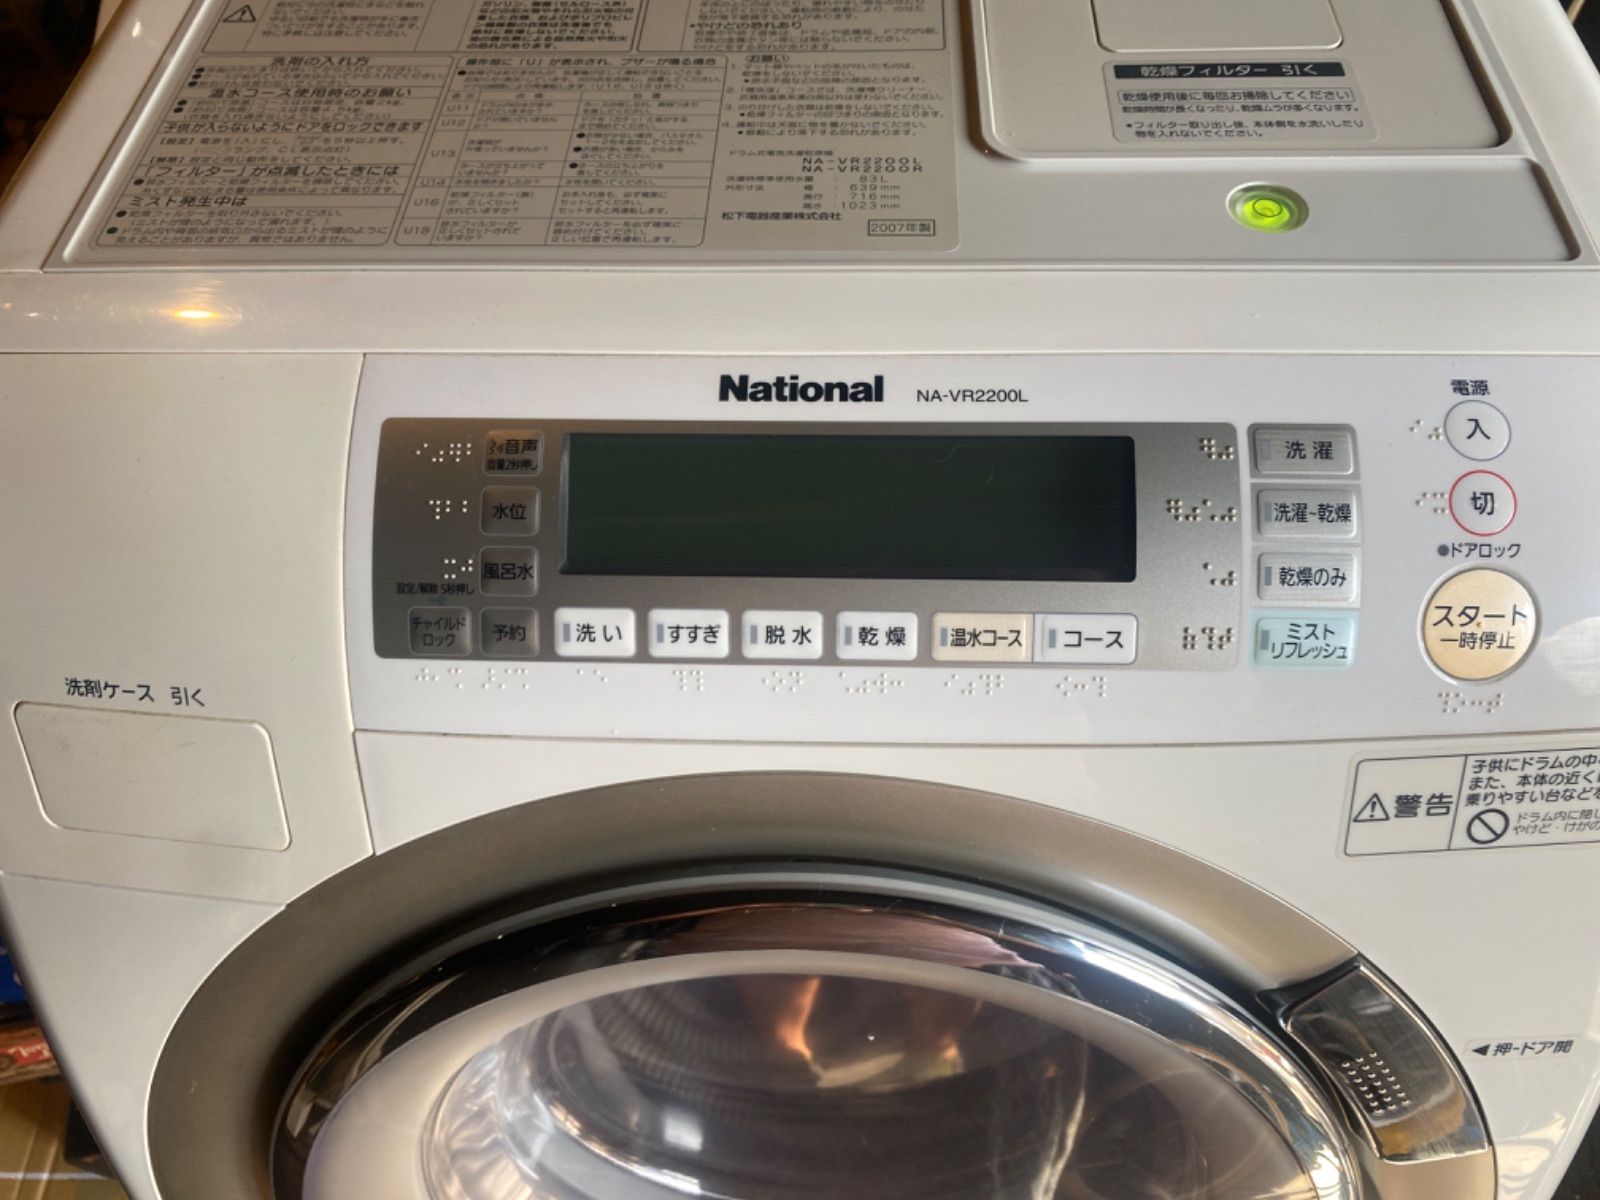 National ナショナル 2008年製 ドラム式洗濯機 NA-VR2200L 【お値下げ